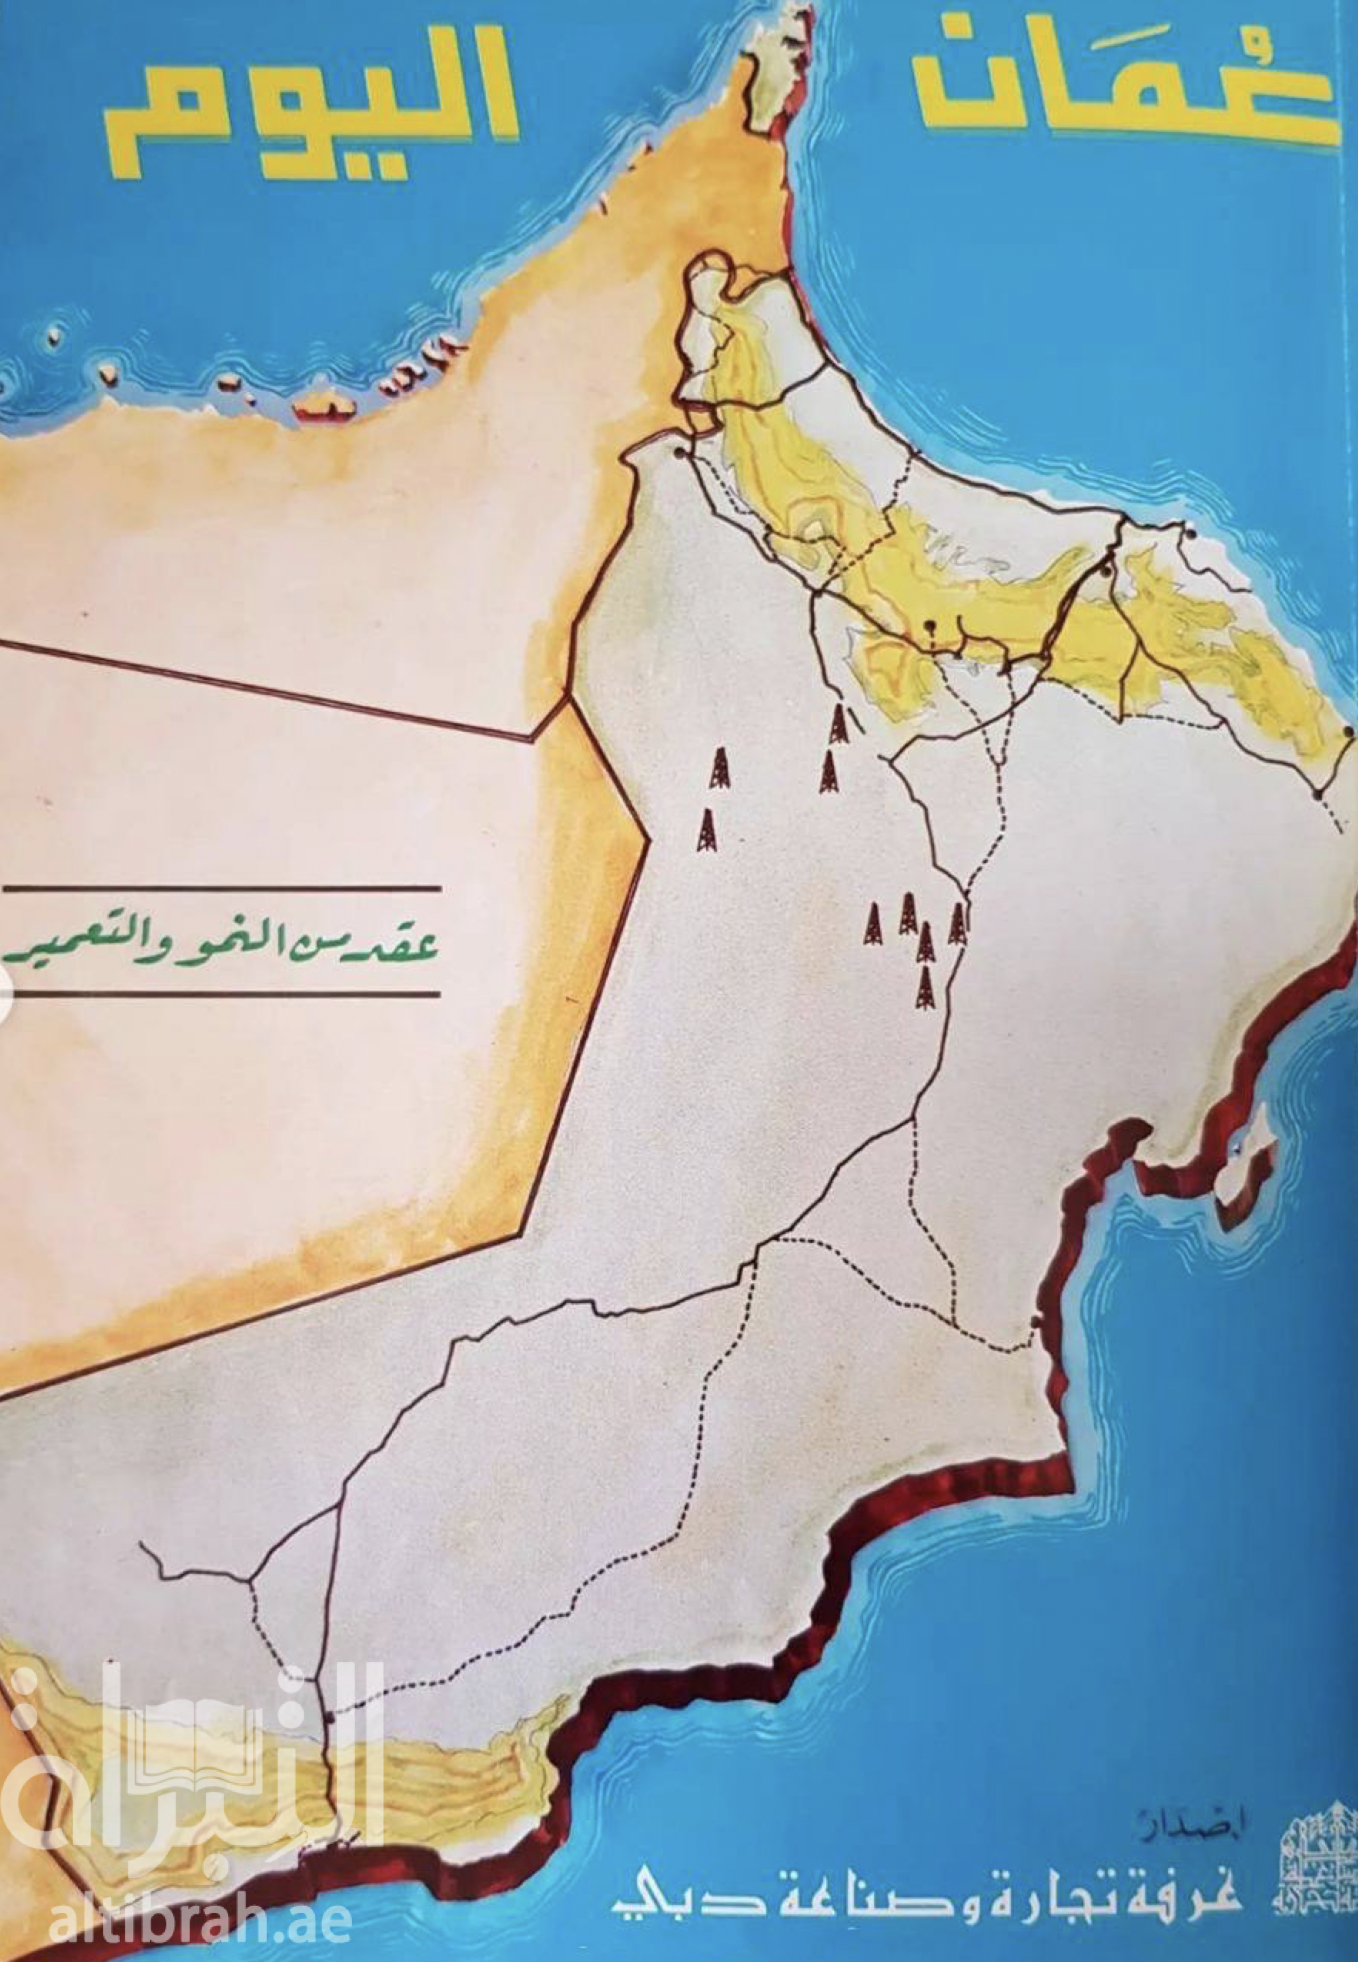 كتاب عمان اليوم : عقد من النمو والتعمير